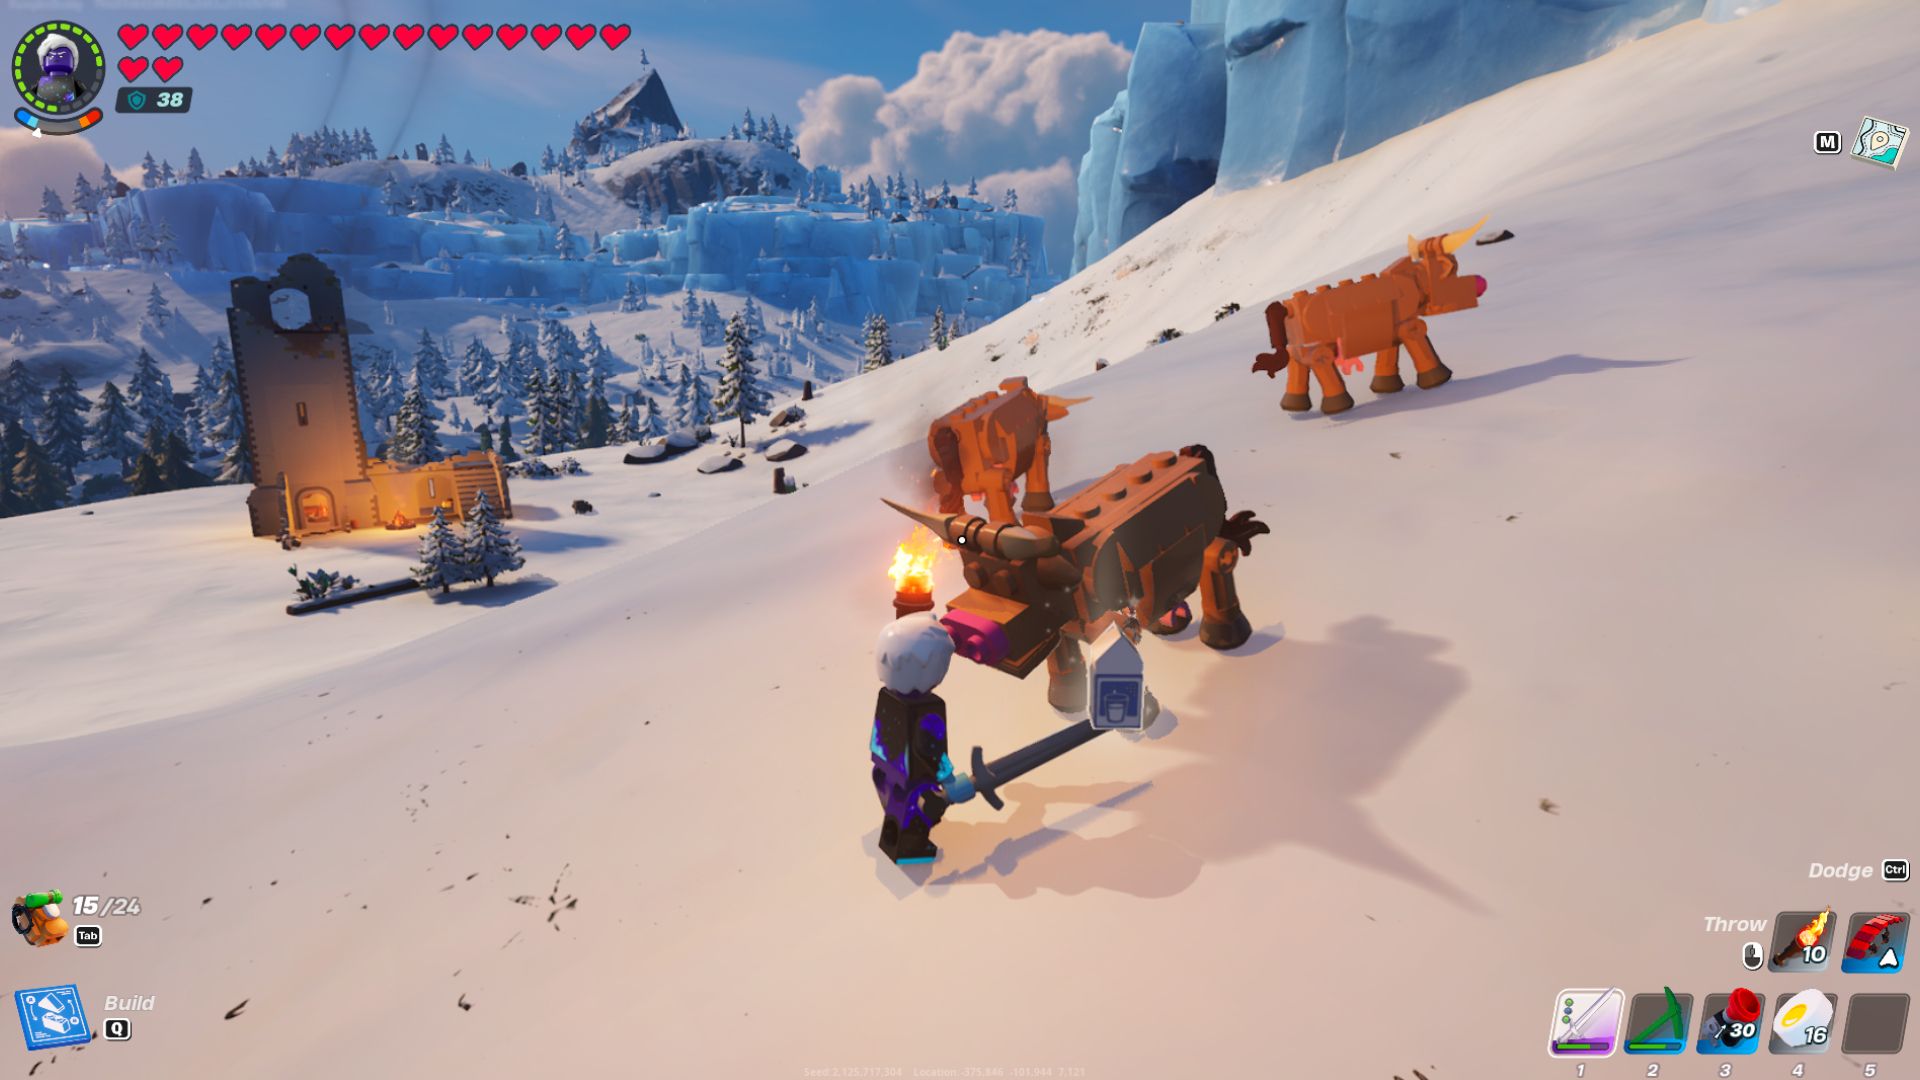 Игрок в Лего гладит коричневую корову, чтобы получить молоко.